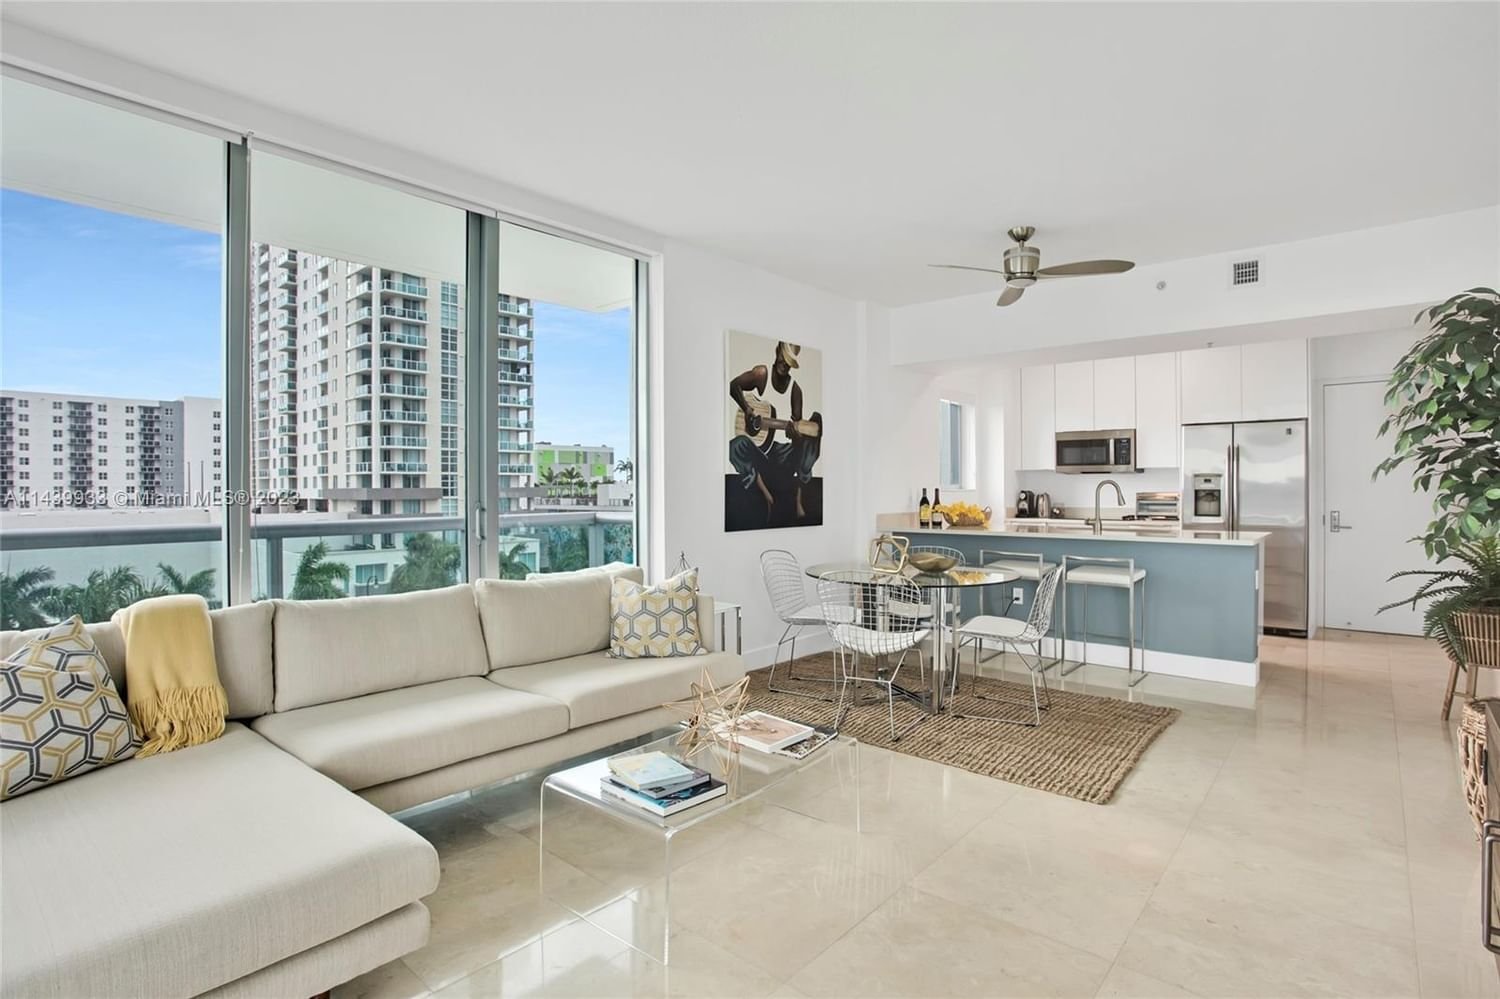 Real estate property located at 333 24th St #601, Miami-Dade County, GALLERY ART CONDO, Miami, FL